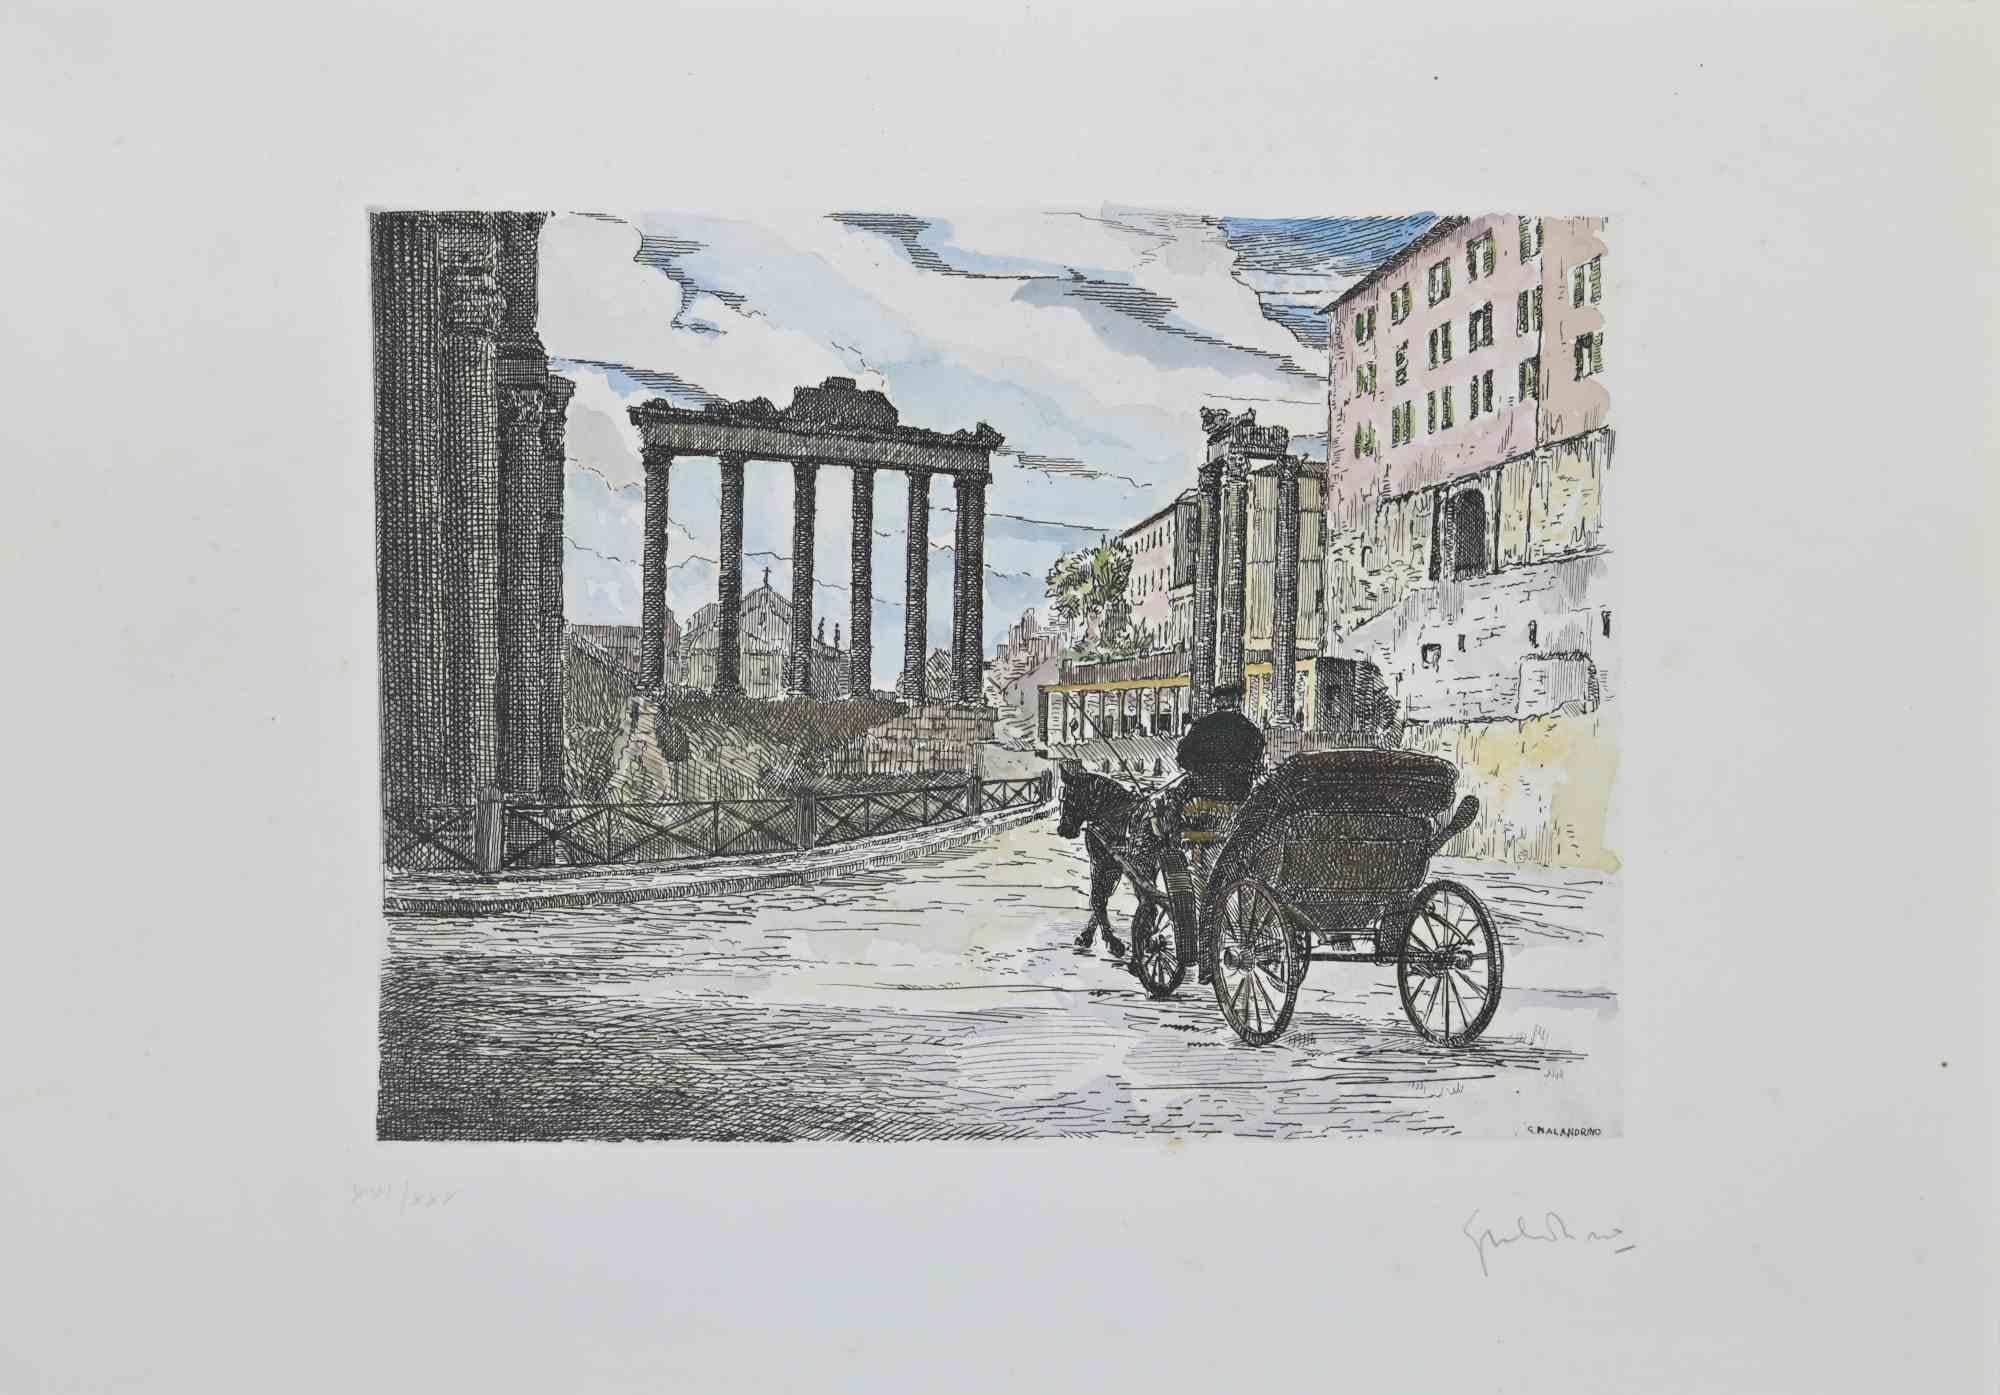 Roman Forum ist ein Kunstwerk, das von Giuseppe Malandrino realisiert wurde.

Druck in Radiertechnik und von Hand aquarelliert.

Vom Künstler in der rechten unteren Ecke mit Bleistift handsigniert.

Nummerierte Auflage von 30 Exemplaren.

Guter